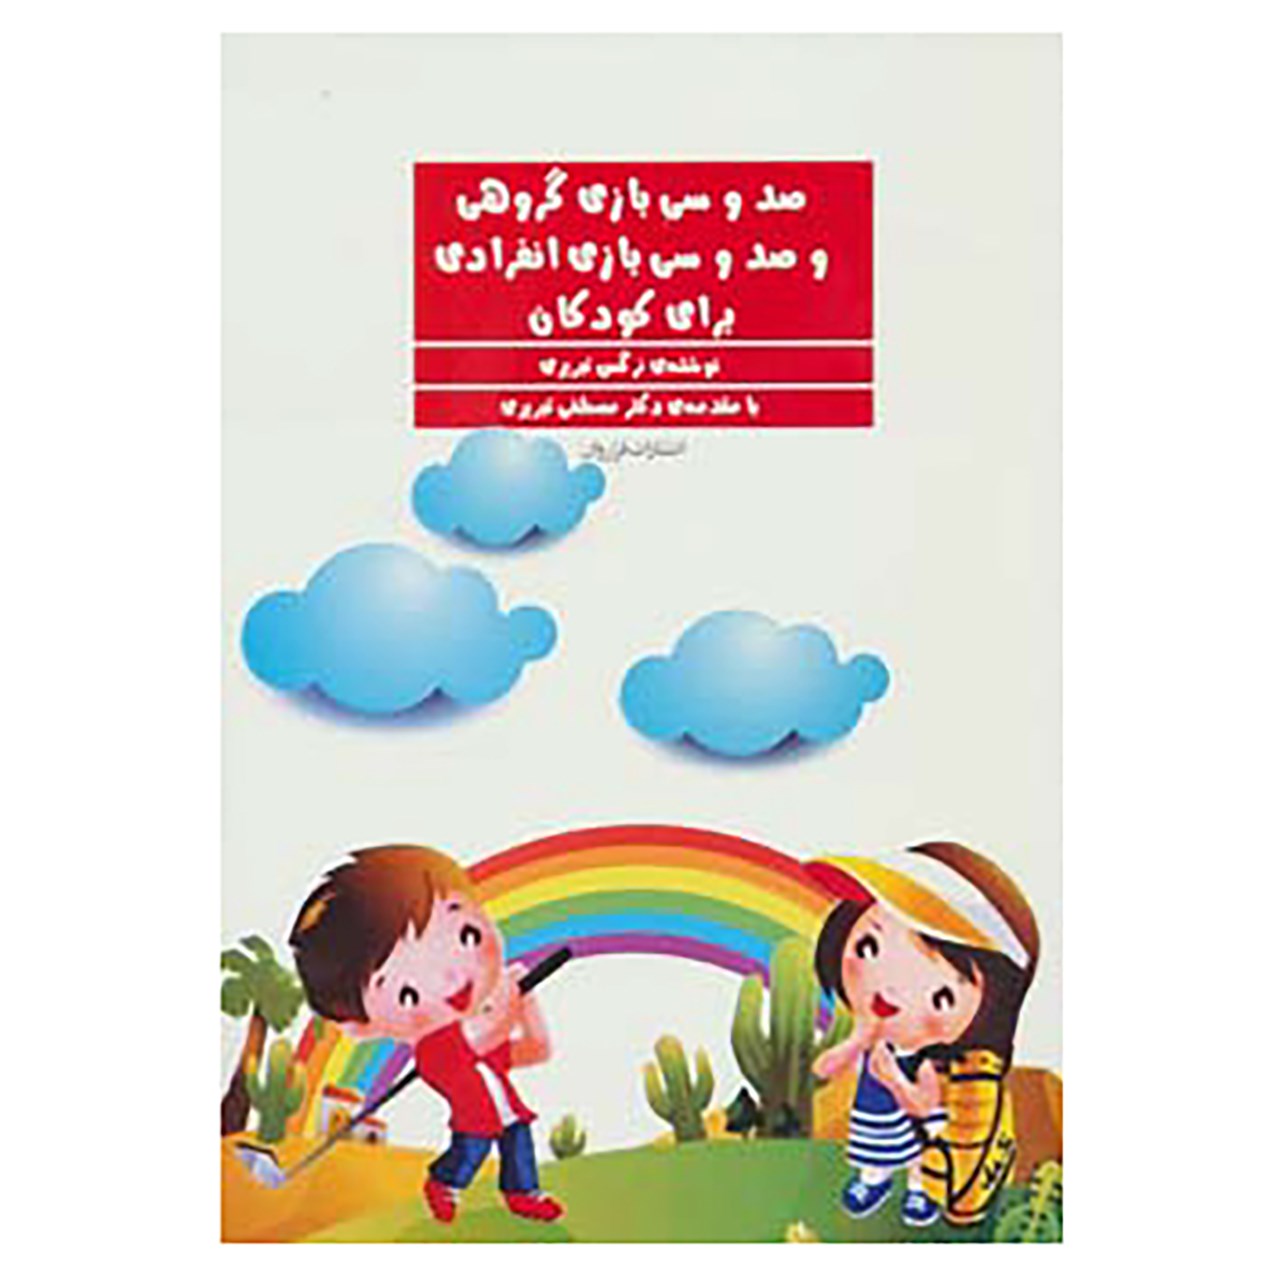 کتاب صد و سی بازی گروهی و صد و سی بازی انفرادی برای کودکان اثر نرگس تبریزی